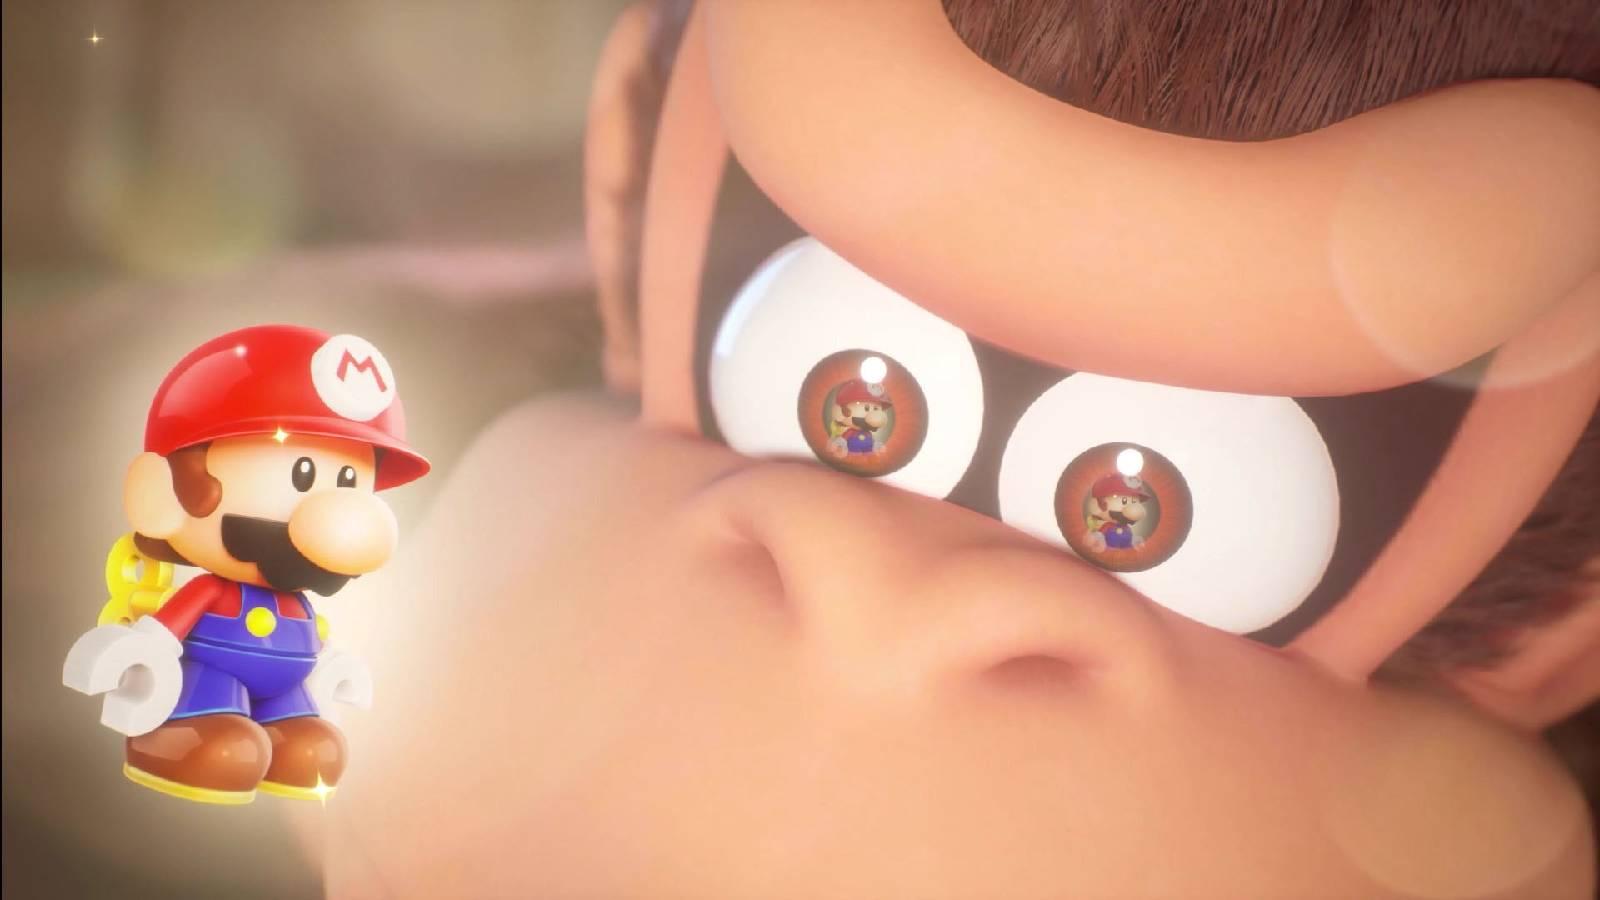 A screenshot shows Donkey Kong looking at a Mini Mario